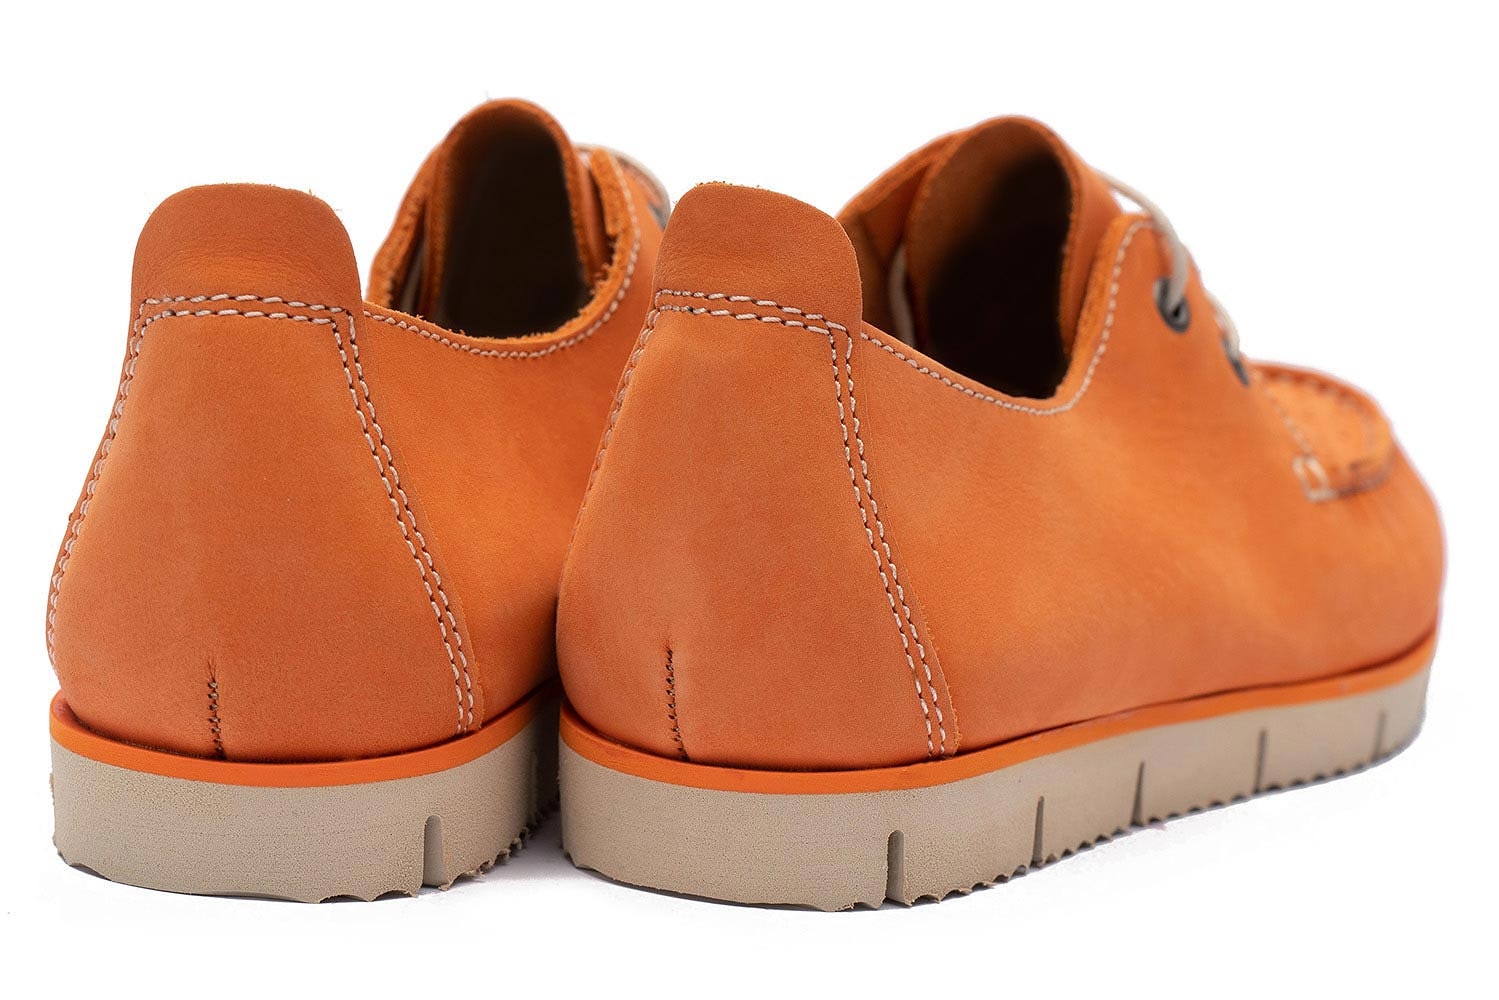 Boat shoes oranj piele nabuc 2